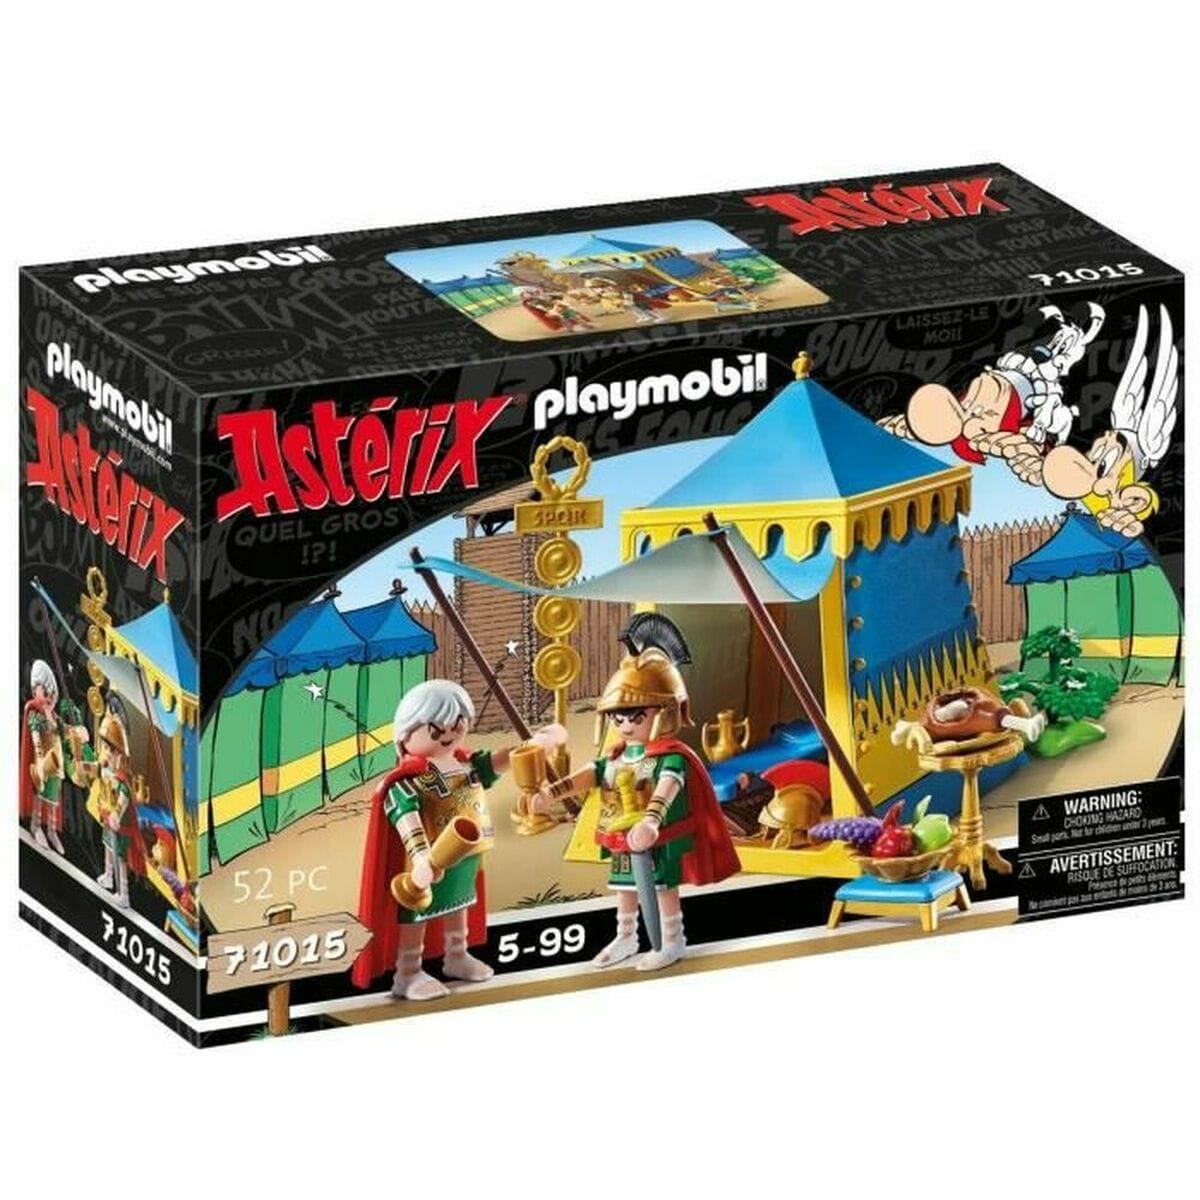 Playmobil Spielzeug | Kostüme > Spielzeug und Spiele > Weiteres spielzeug Playset Playmobil 71015 Astérix